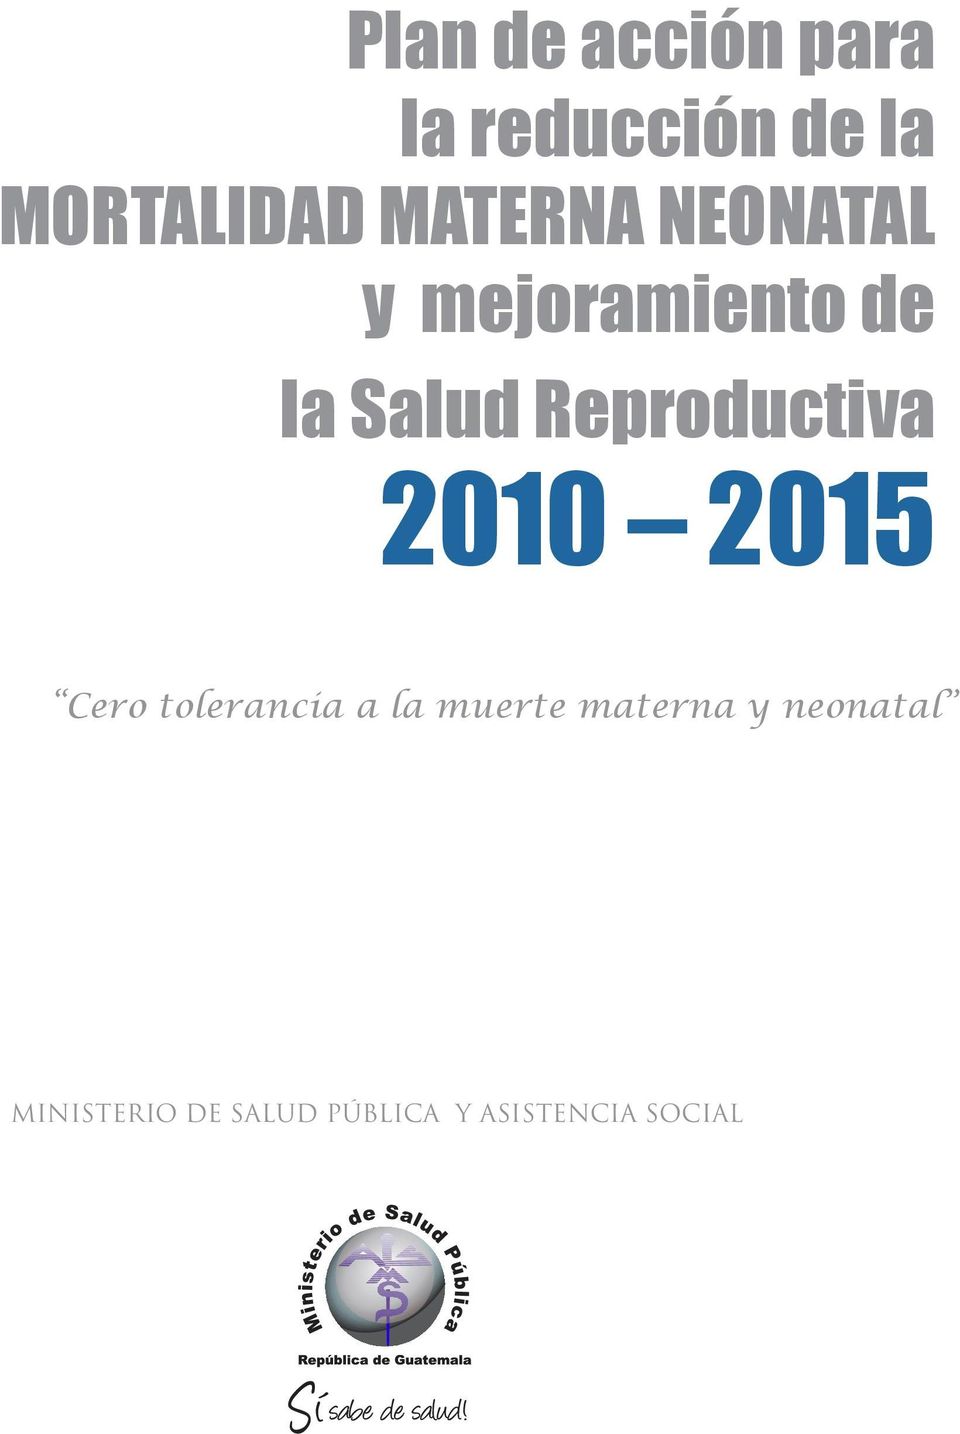 Reproductiva 2010 2015 Cero tolerancia a la muerte